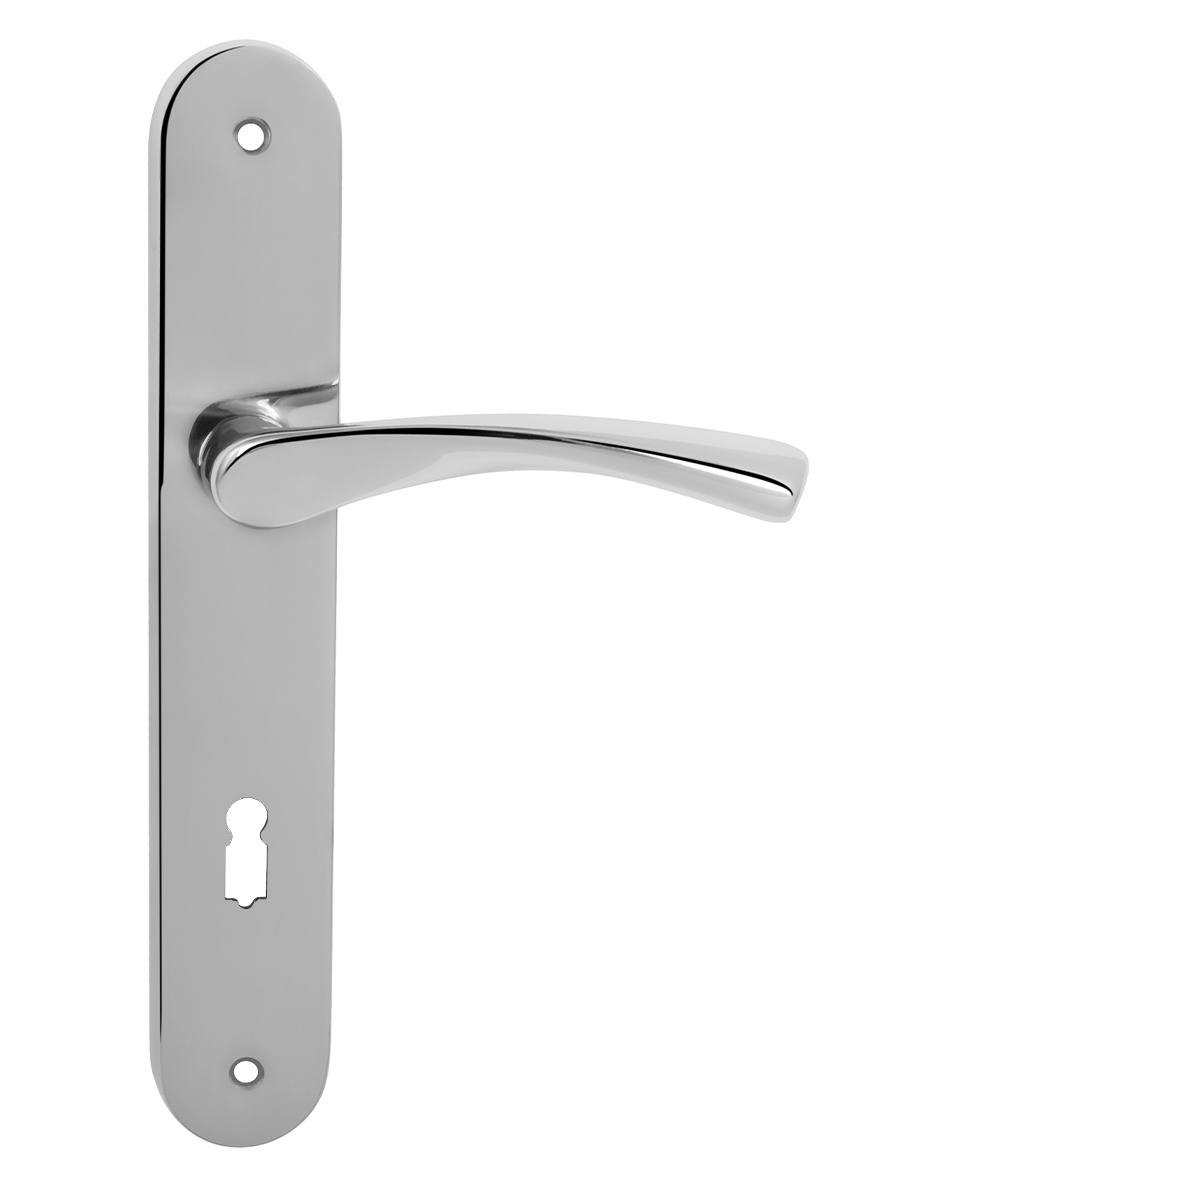 FO - FAN - SO BB otvor pre kľúč, 90 mm, kľučka/kľučka